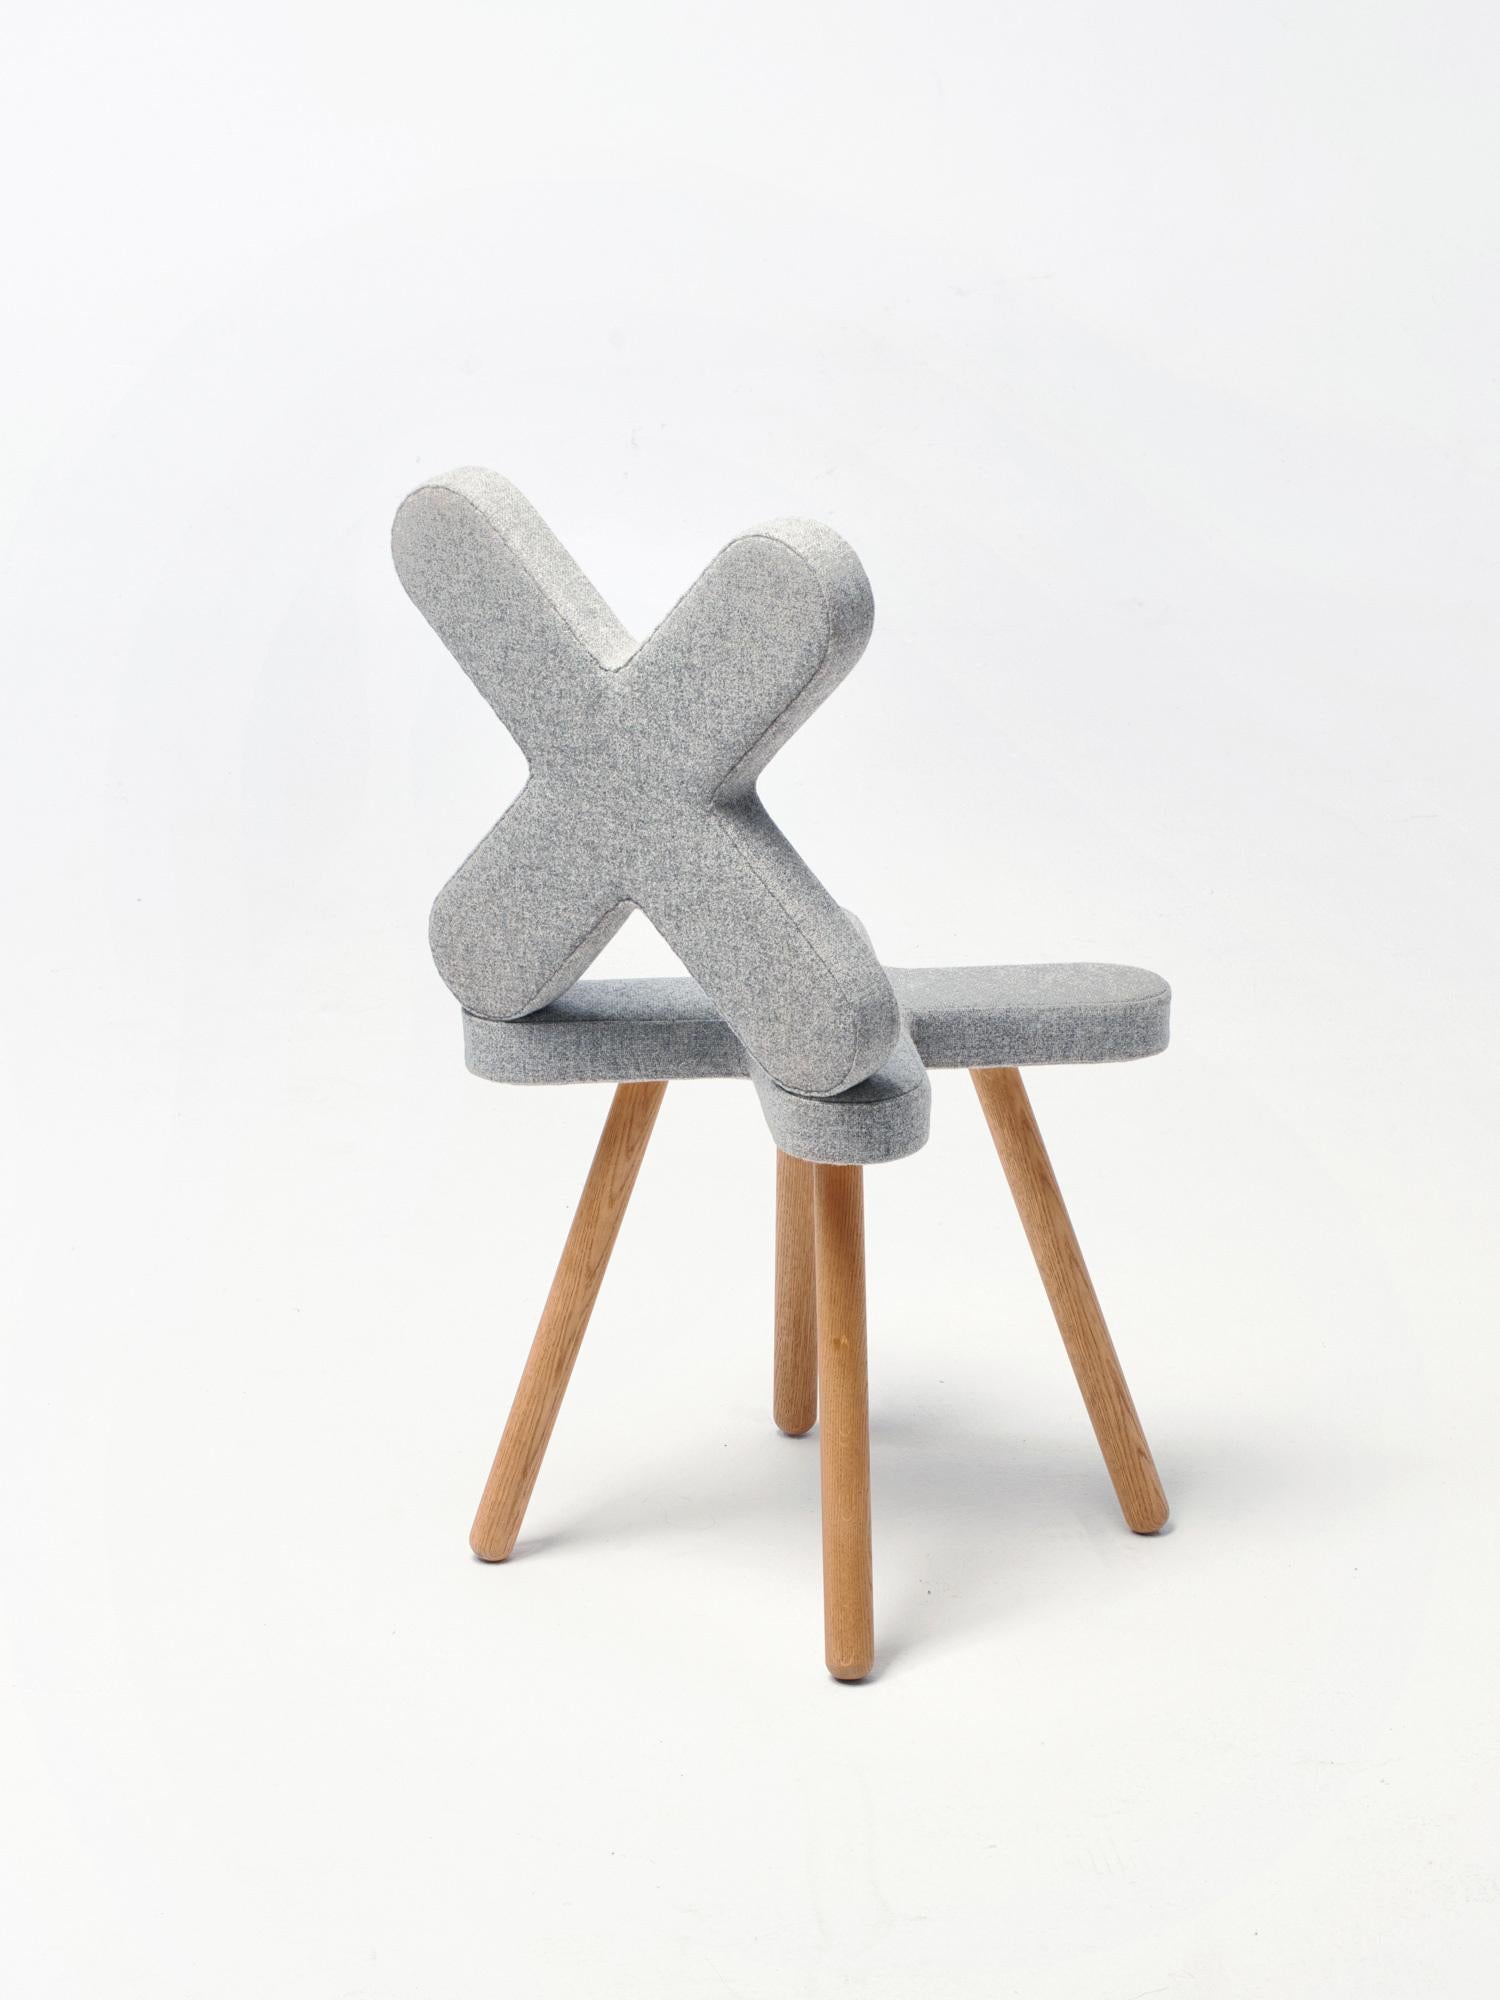 Cross est une collection de chaises et de tabourets rembourrés, travaillant sur la manipulation de l'échelle, tout en expérimentant l'ergonomie, suivant le principe créatif appliqué à Pinsofa. Cette approche se traduit par des objets et des